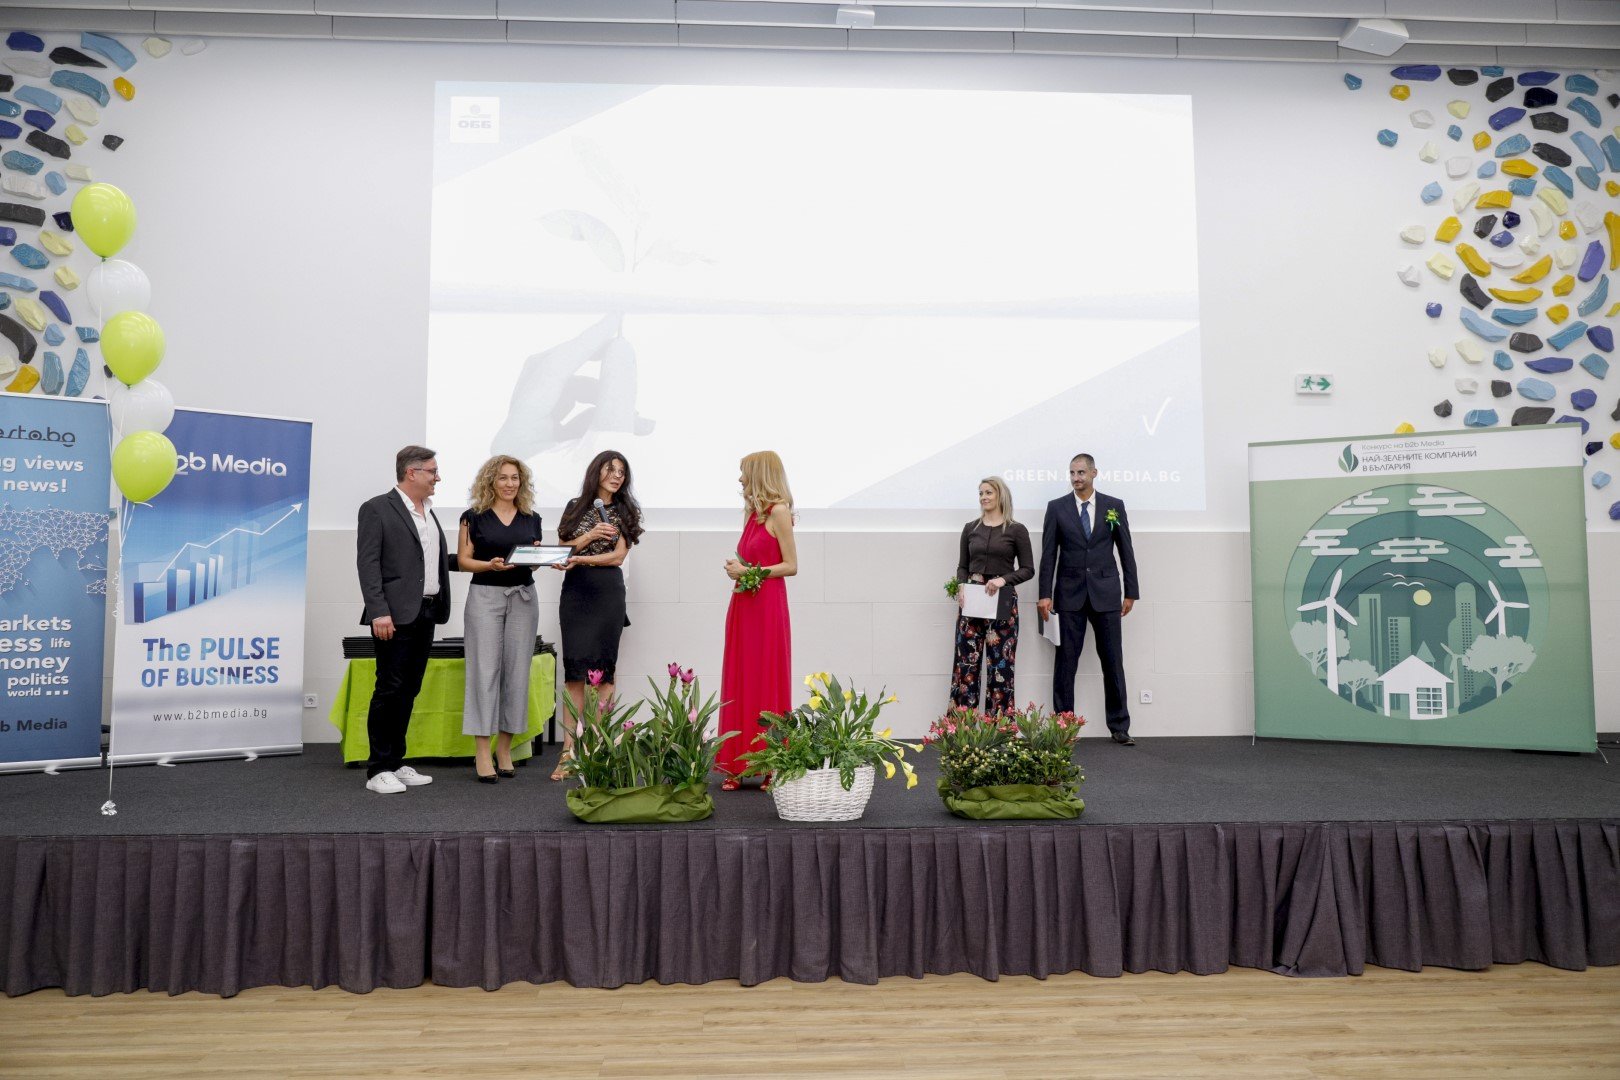 Моника Станишева получи отличието "Зелена медия" за Dir.bg от Надя Маринова, основател на b2b Mediа и организатор на конкурса.